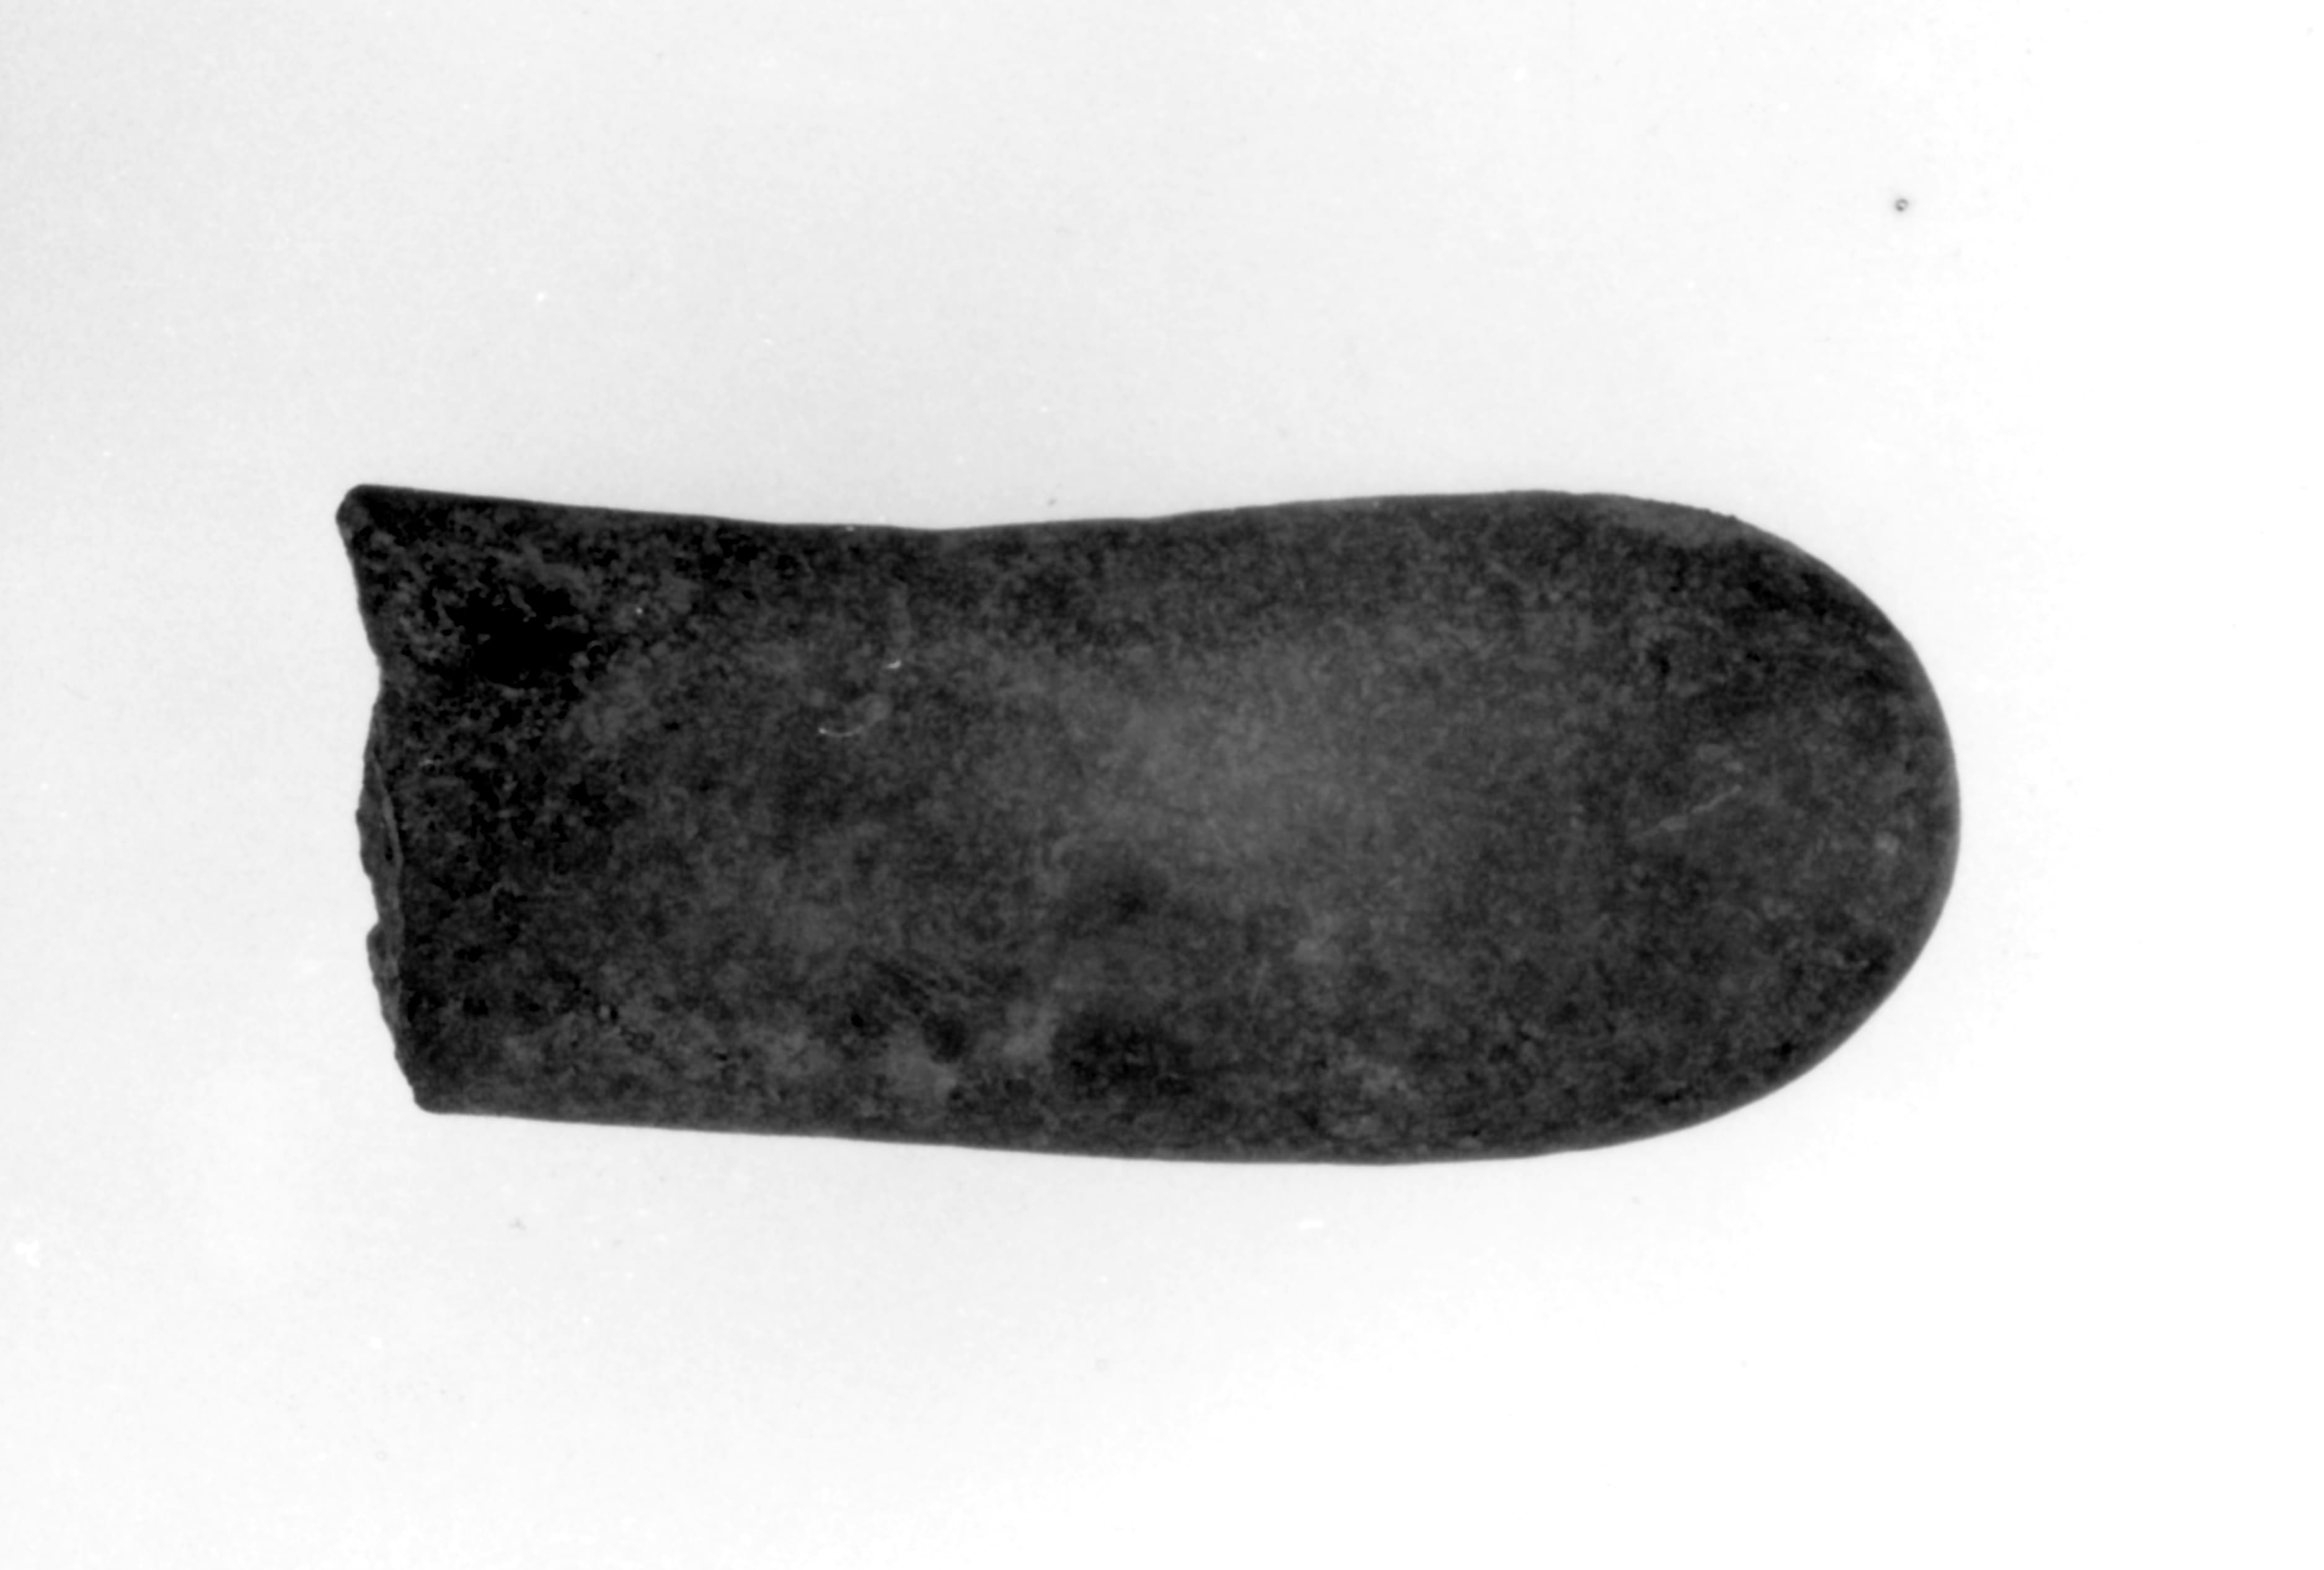 lisciatoio (Neolitico)